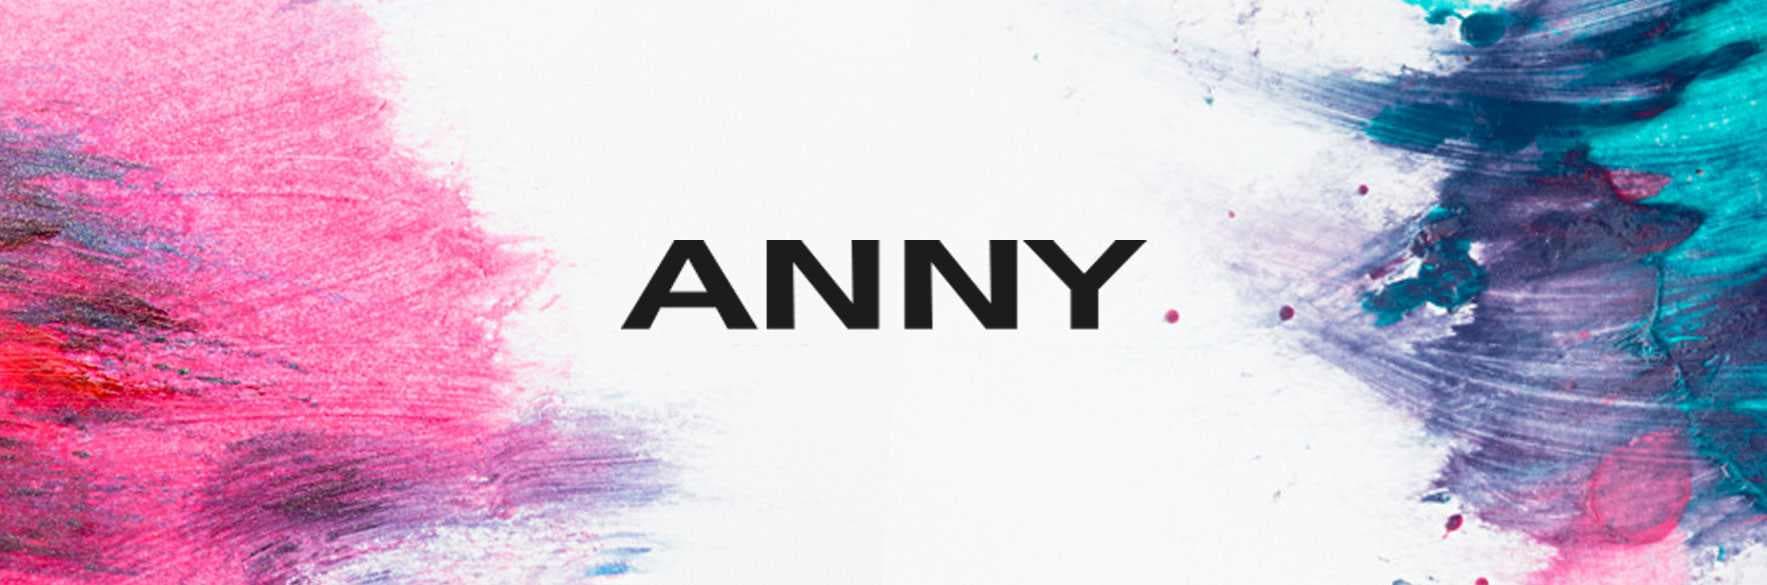 انی | لاک ناخن و محصولات اصل ANNY